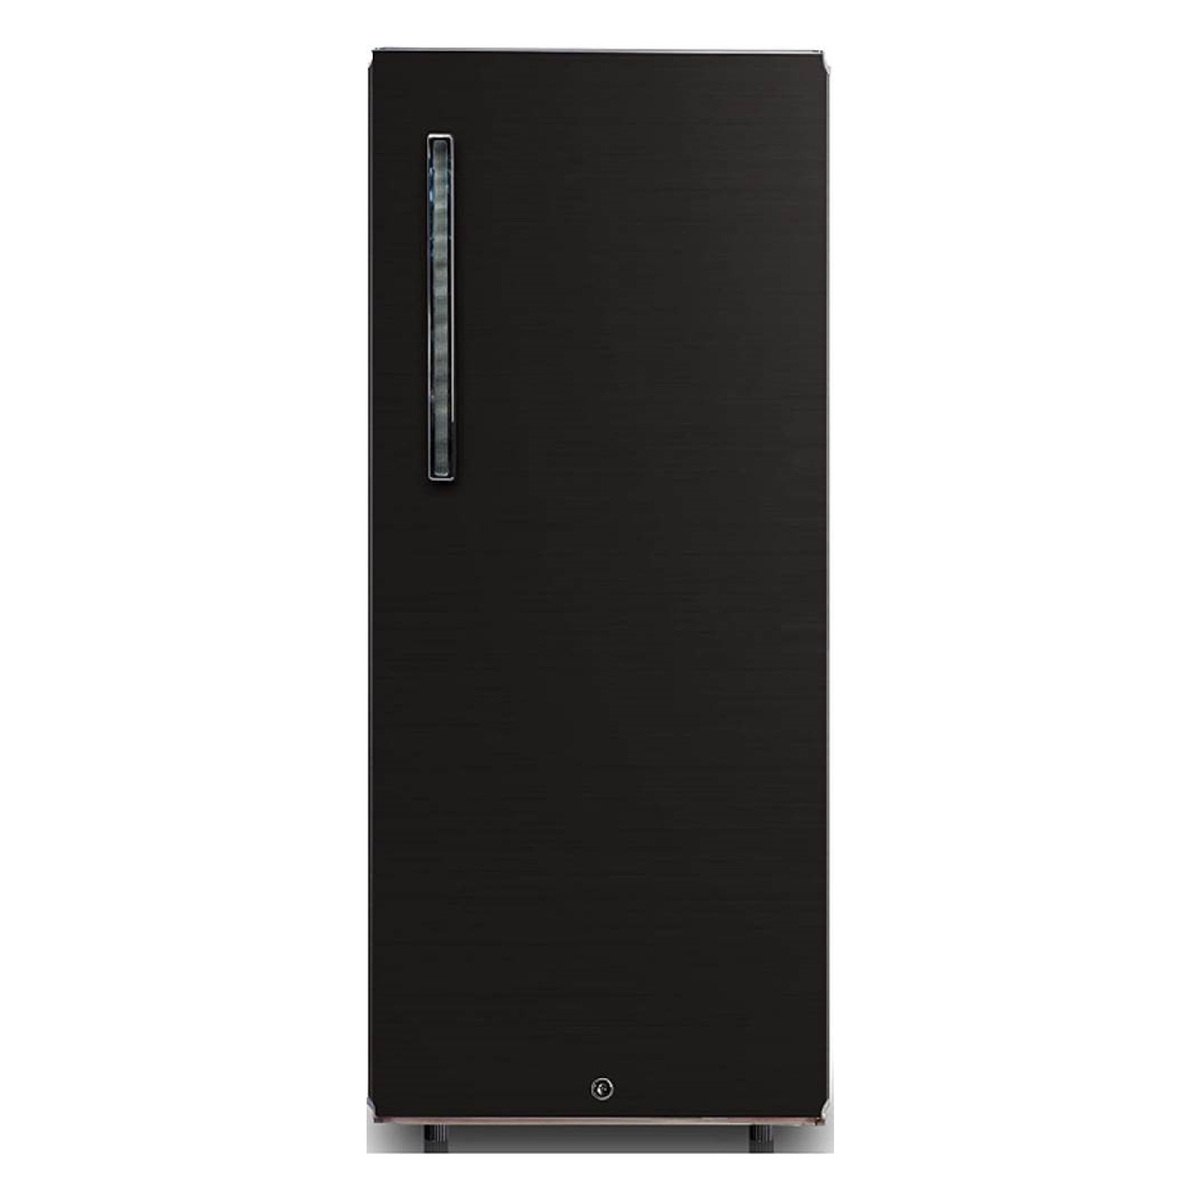 Midea Single Door Refrigerator MDRD268FGE28 268Ltr